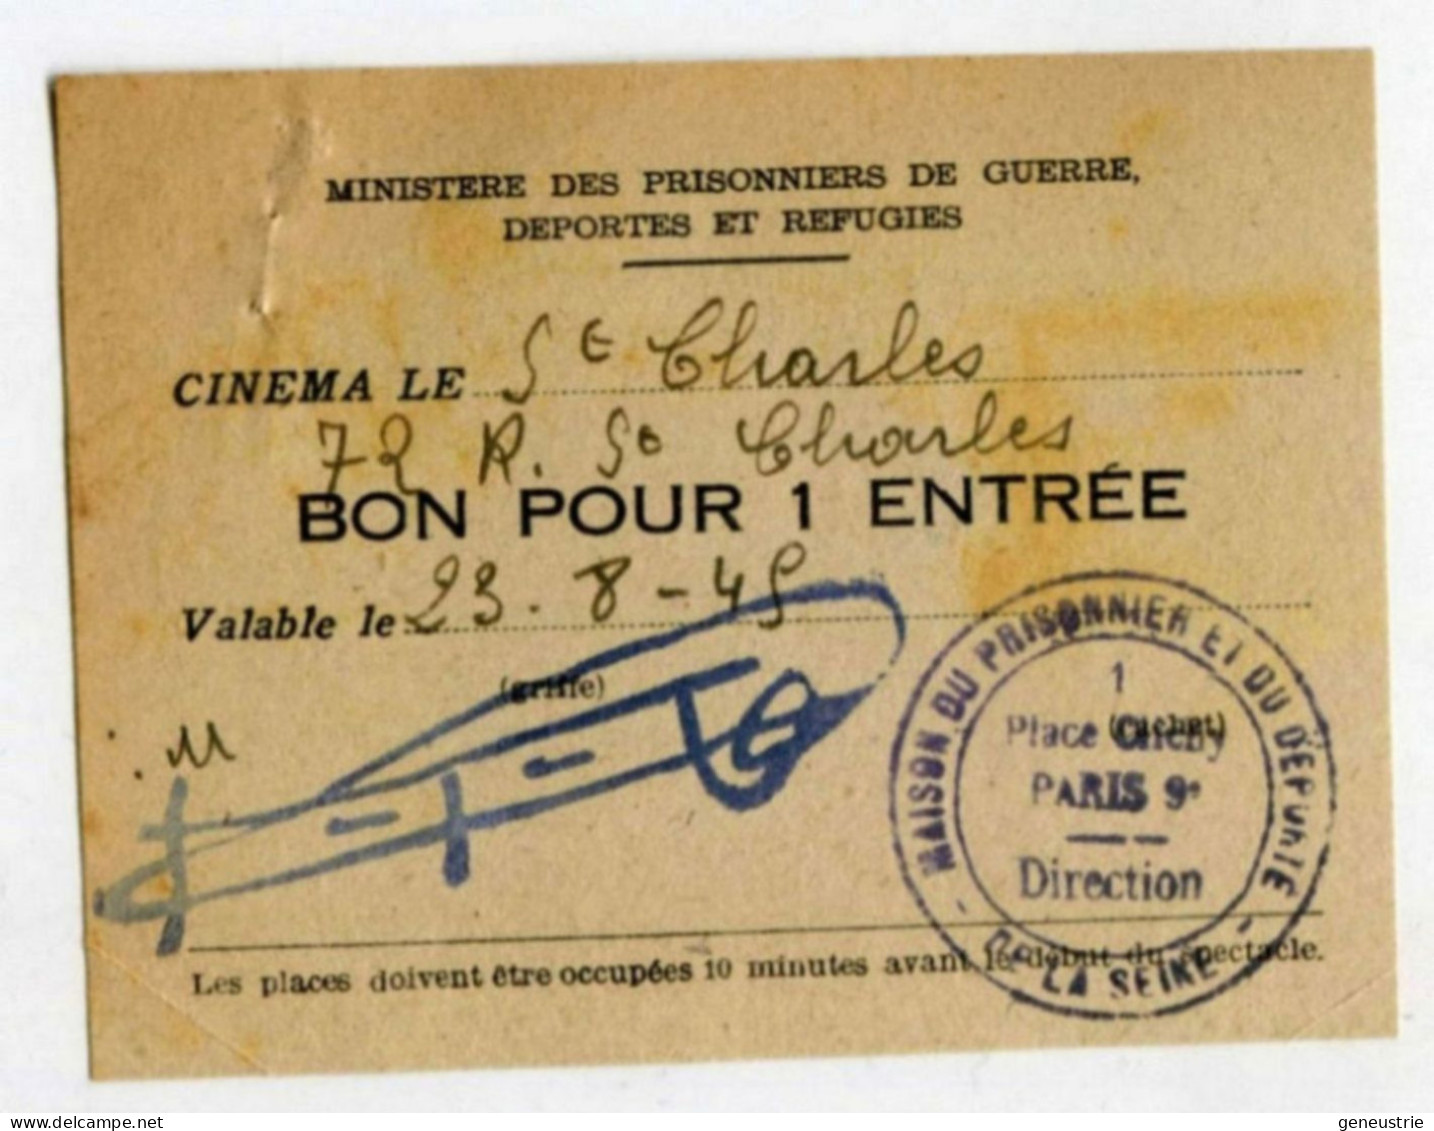 WW2 Bon De Nécessité "Bon Pour 1 Entrée" Ticket Cinéma St Charles - Maison Du Prisonnier Et Du Déporté - WWII - Monetary / Of Necessity